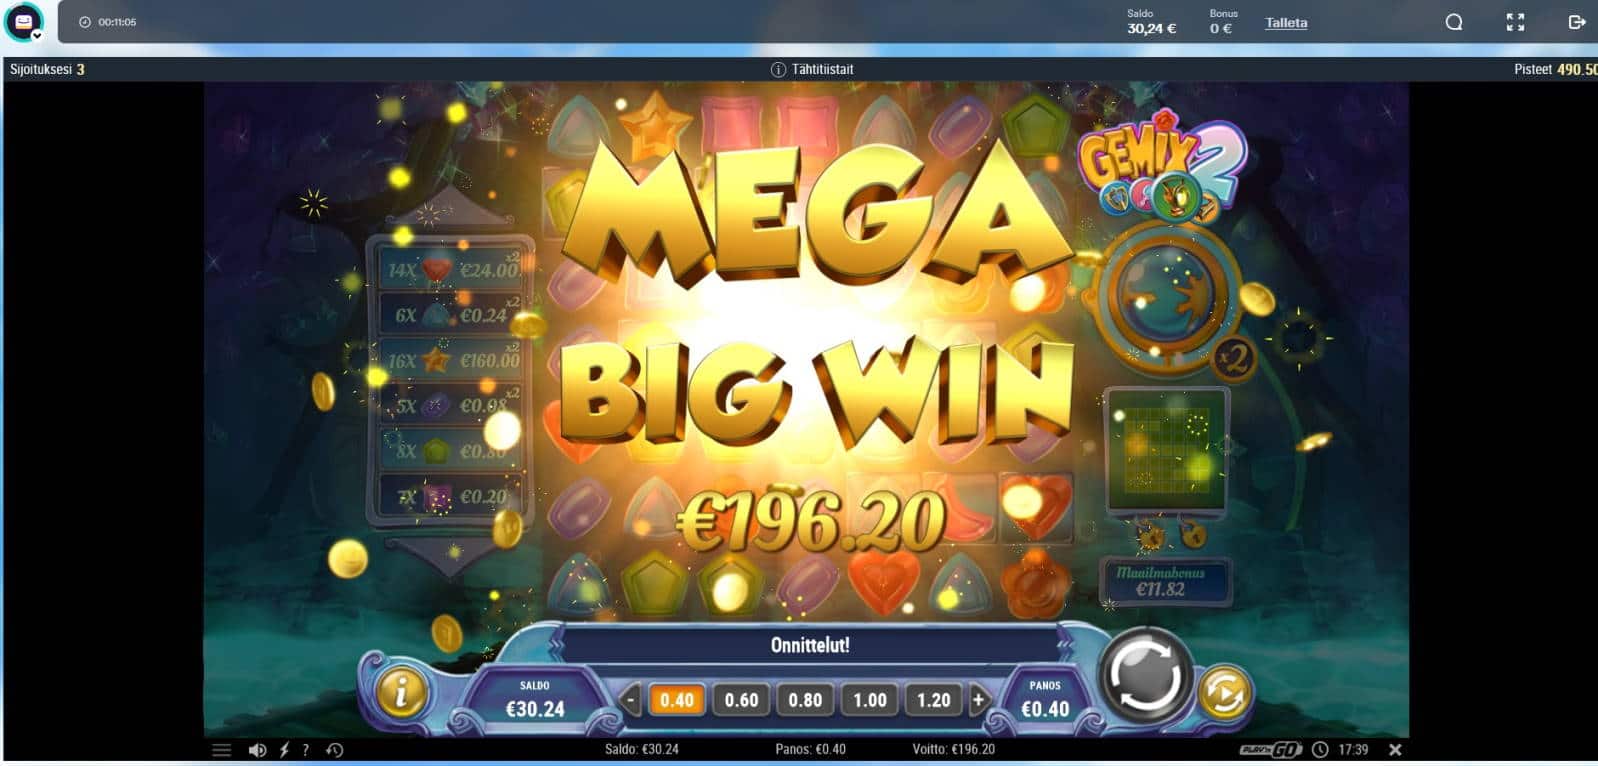 Gemix 2 Casino win picture by Mrmork666 26.10.2021 196.20e 490X